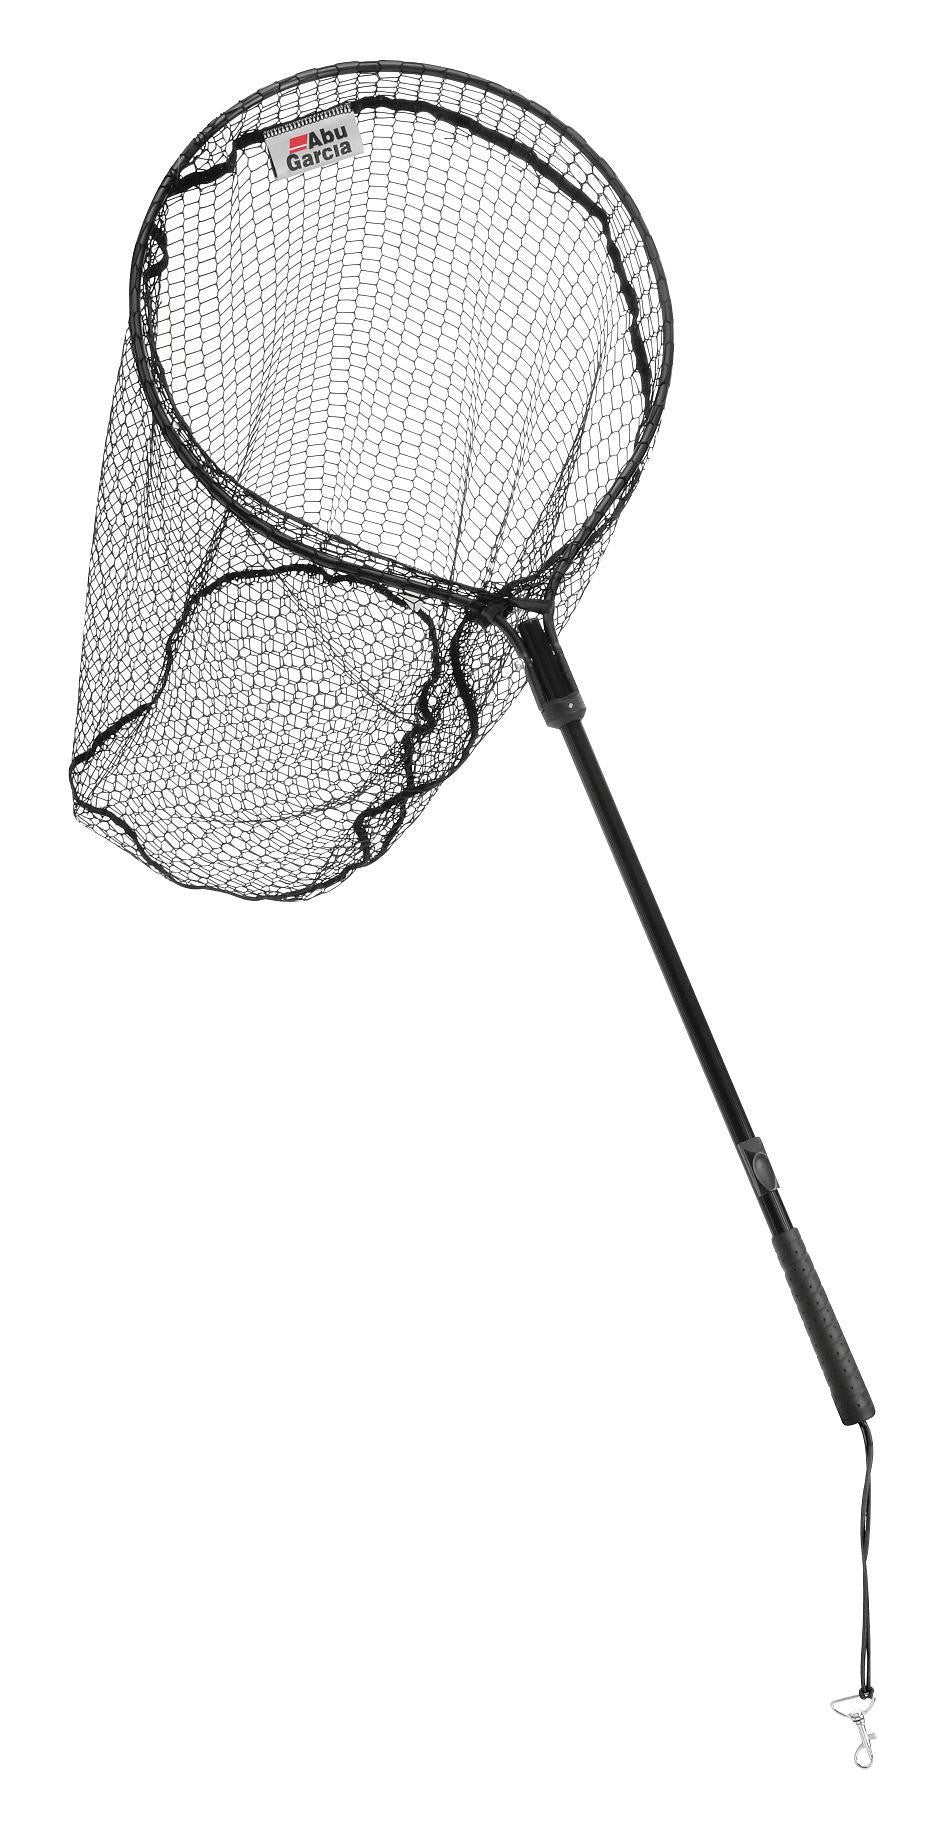 Abu Game Flip Landing Net